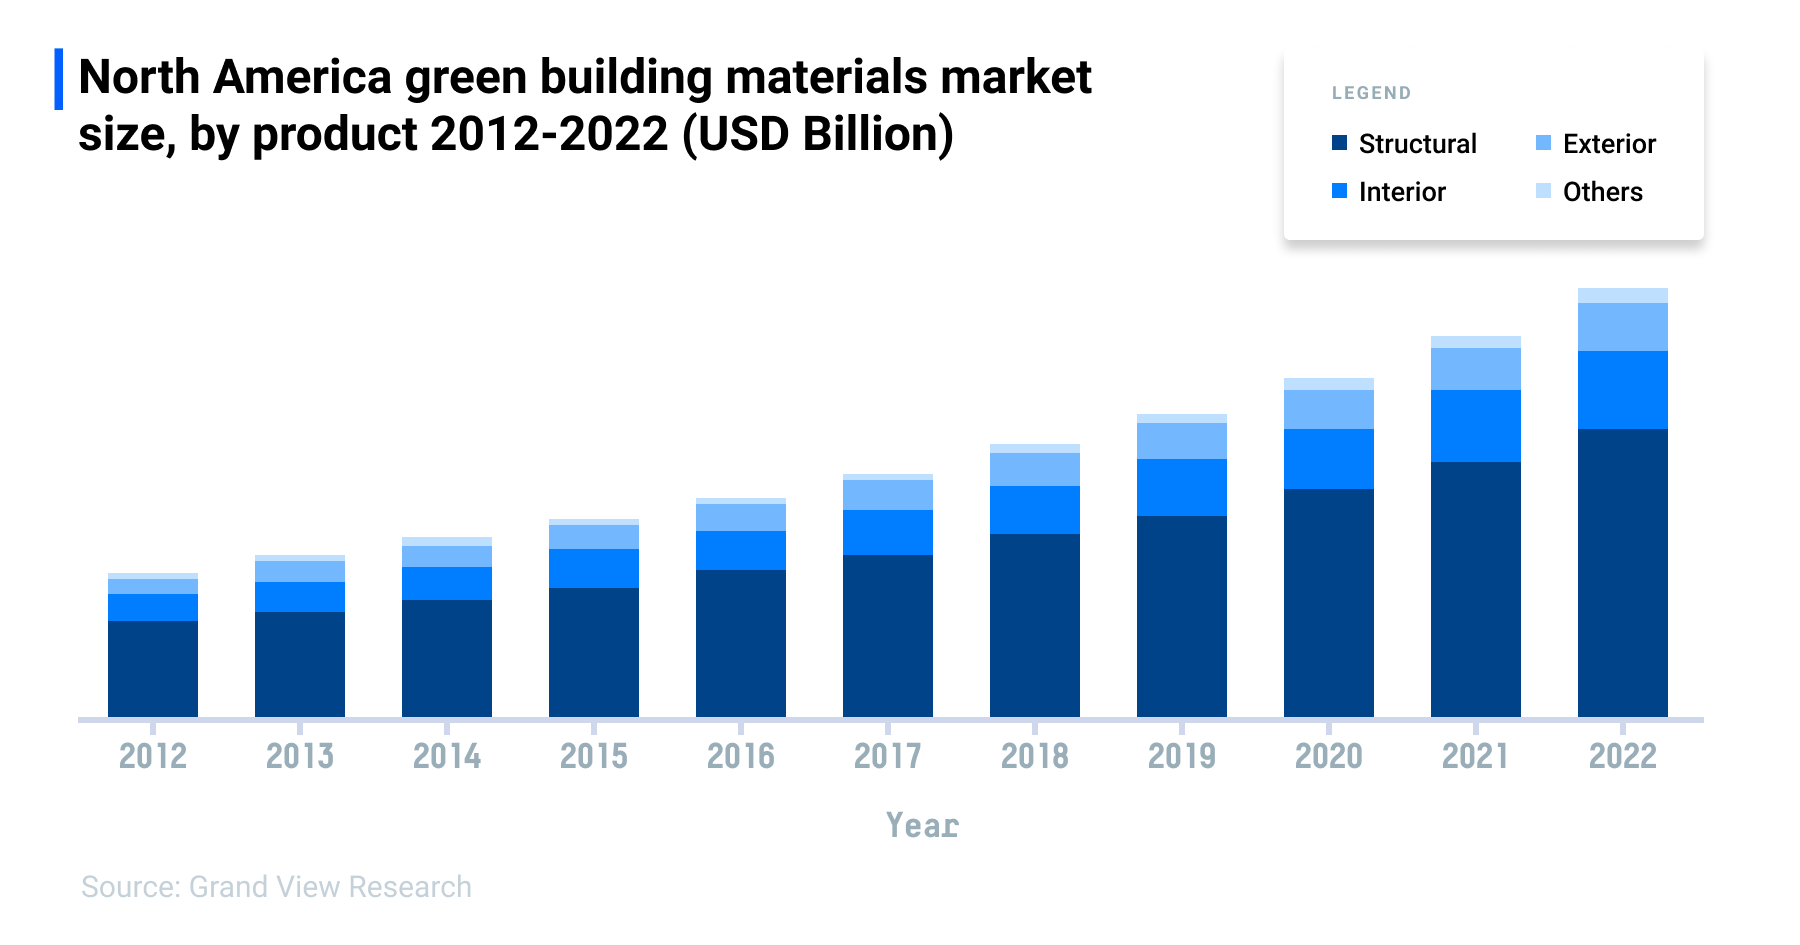 Green building materials market on an upward trend